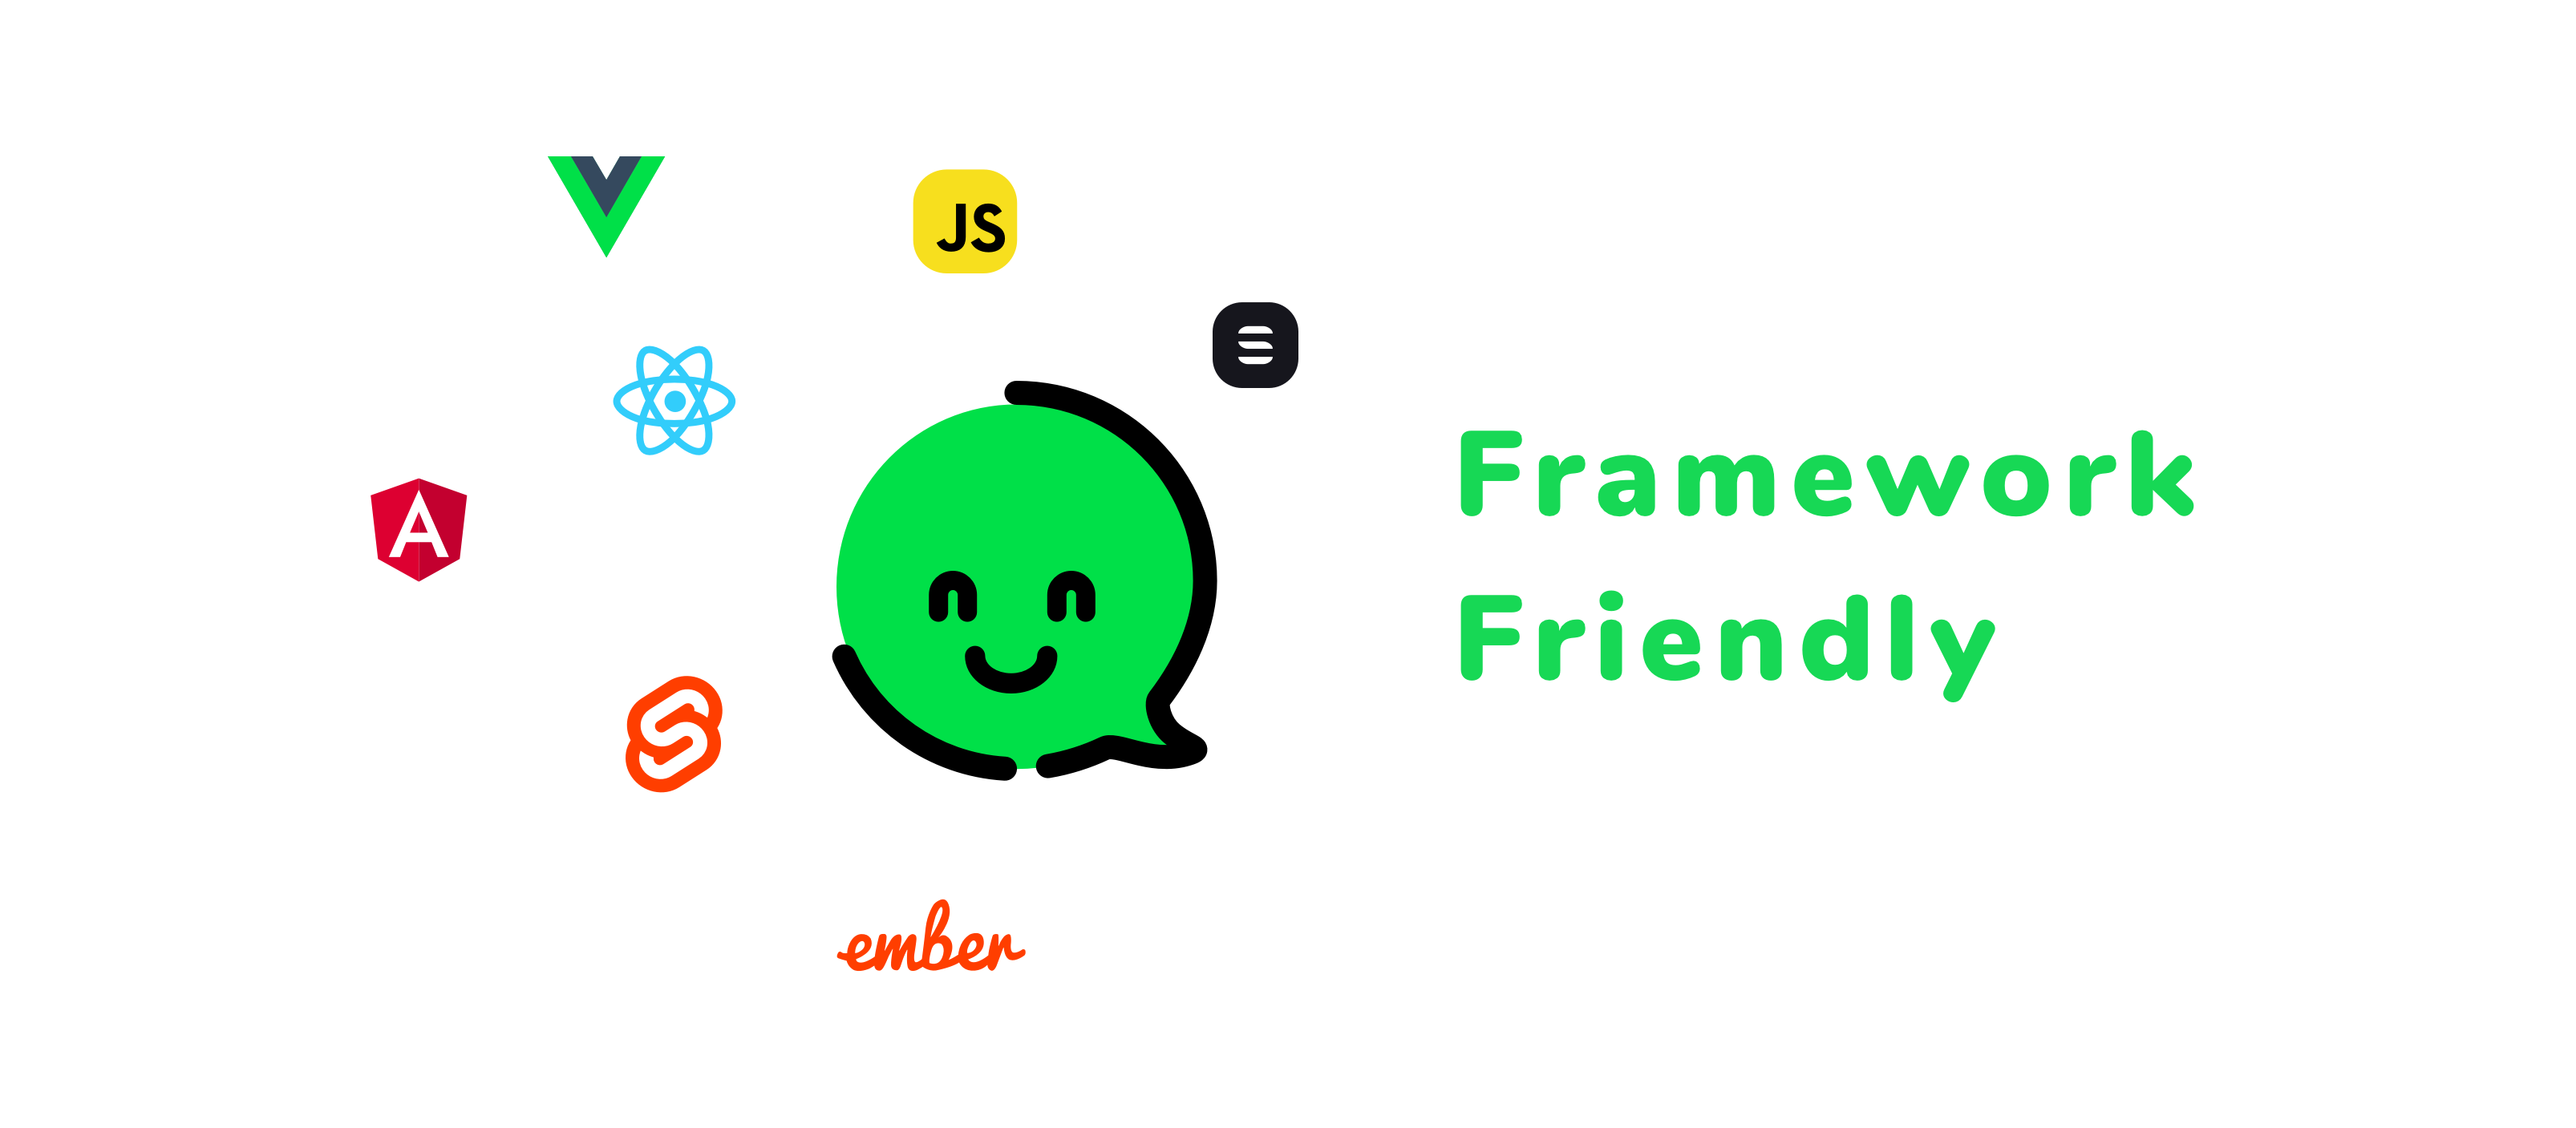 Framework friendly